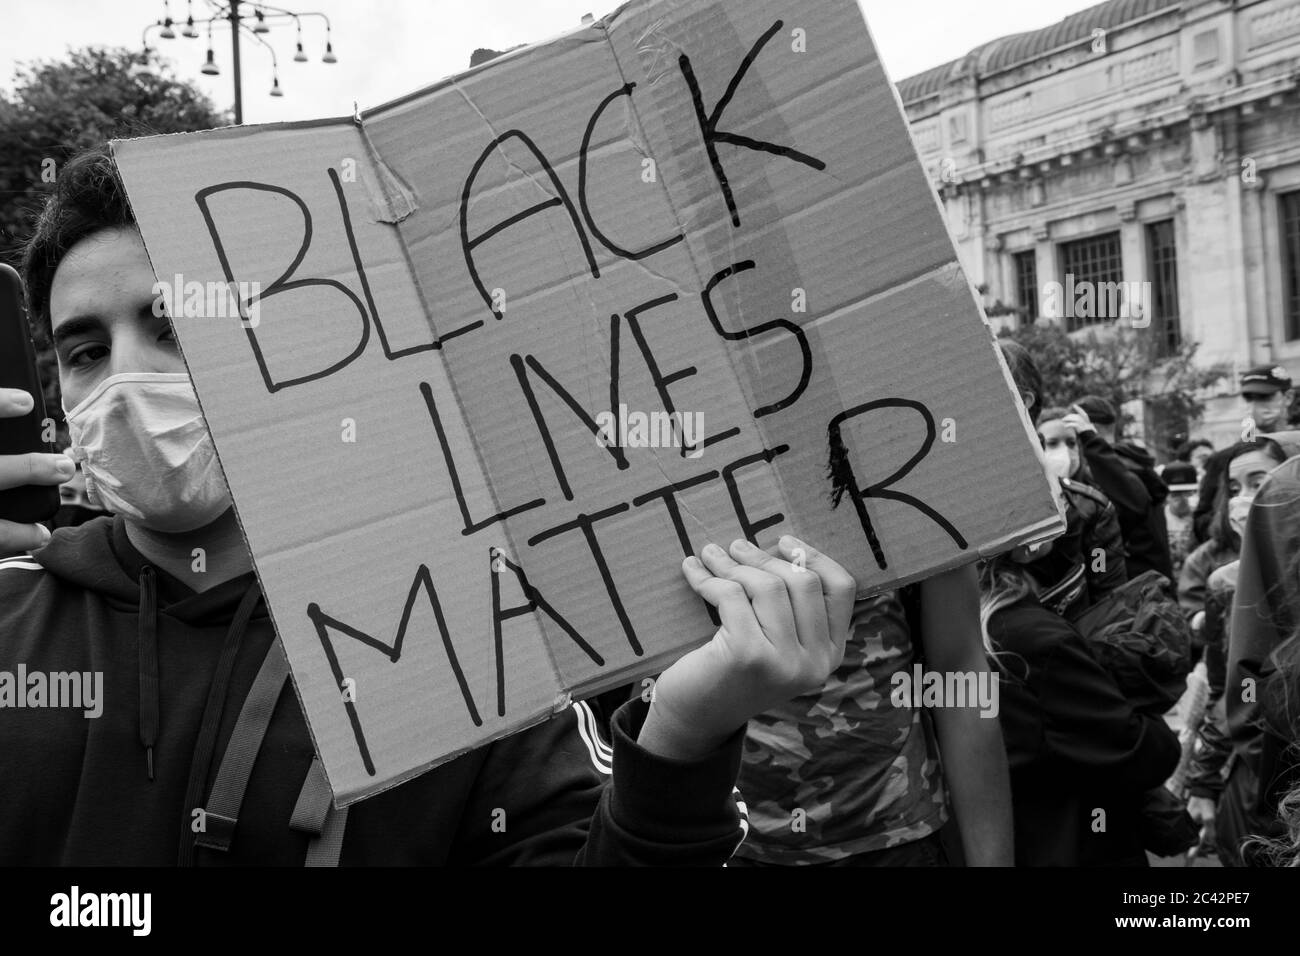 Protestler mit Plakat mit den Worten "Black Lives Matter" während der Protestversammlung in Solidarität mit der BLM-Bewegung neben dem Mailänder Hauptbahnhof Stockfoto